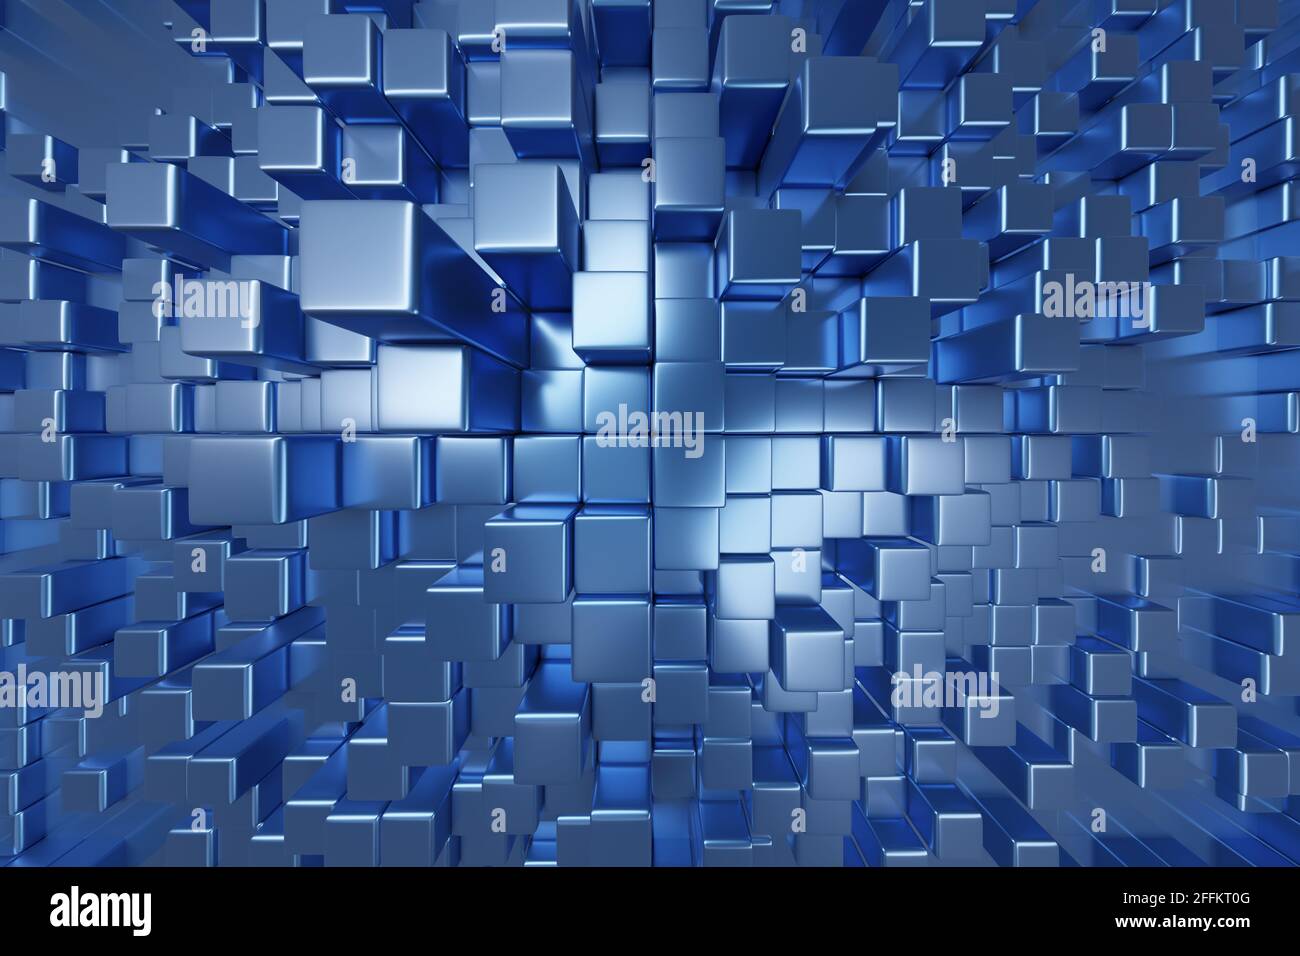 Fond bleu de formes cubes. illustration 3d Banque D'Images